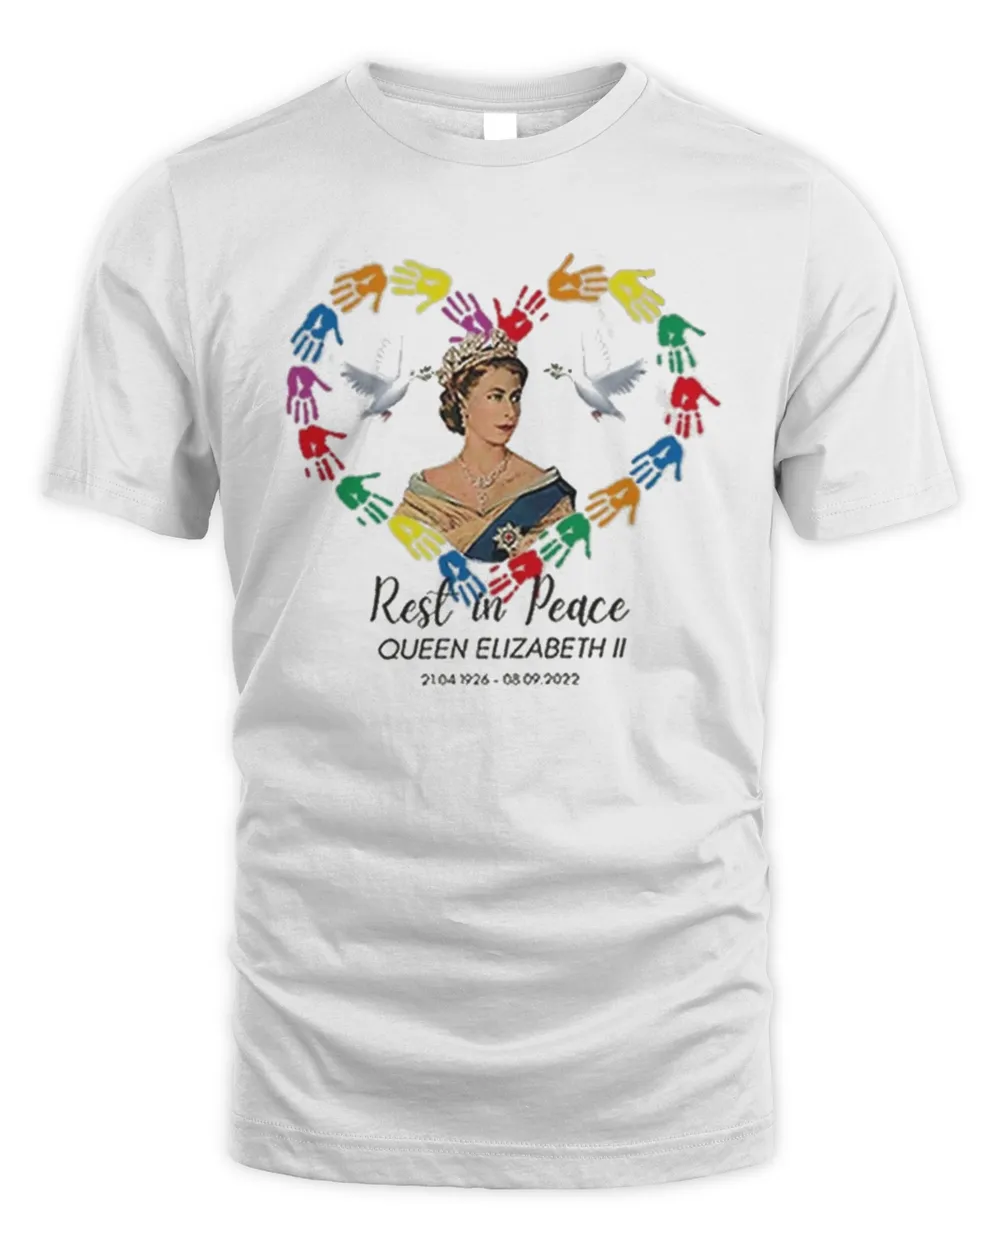 Rest In Peace Elizabeth II 1926-2022 Shirt